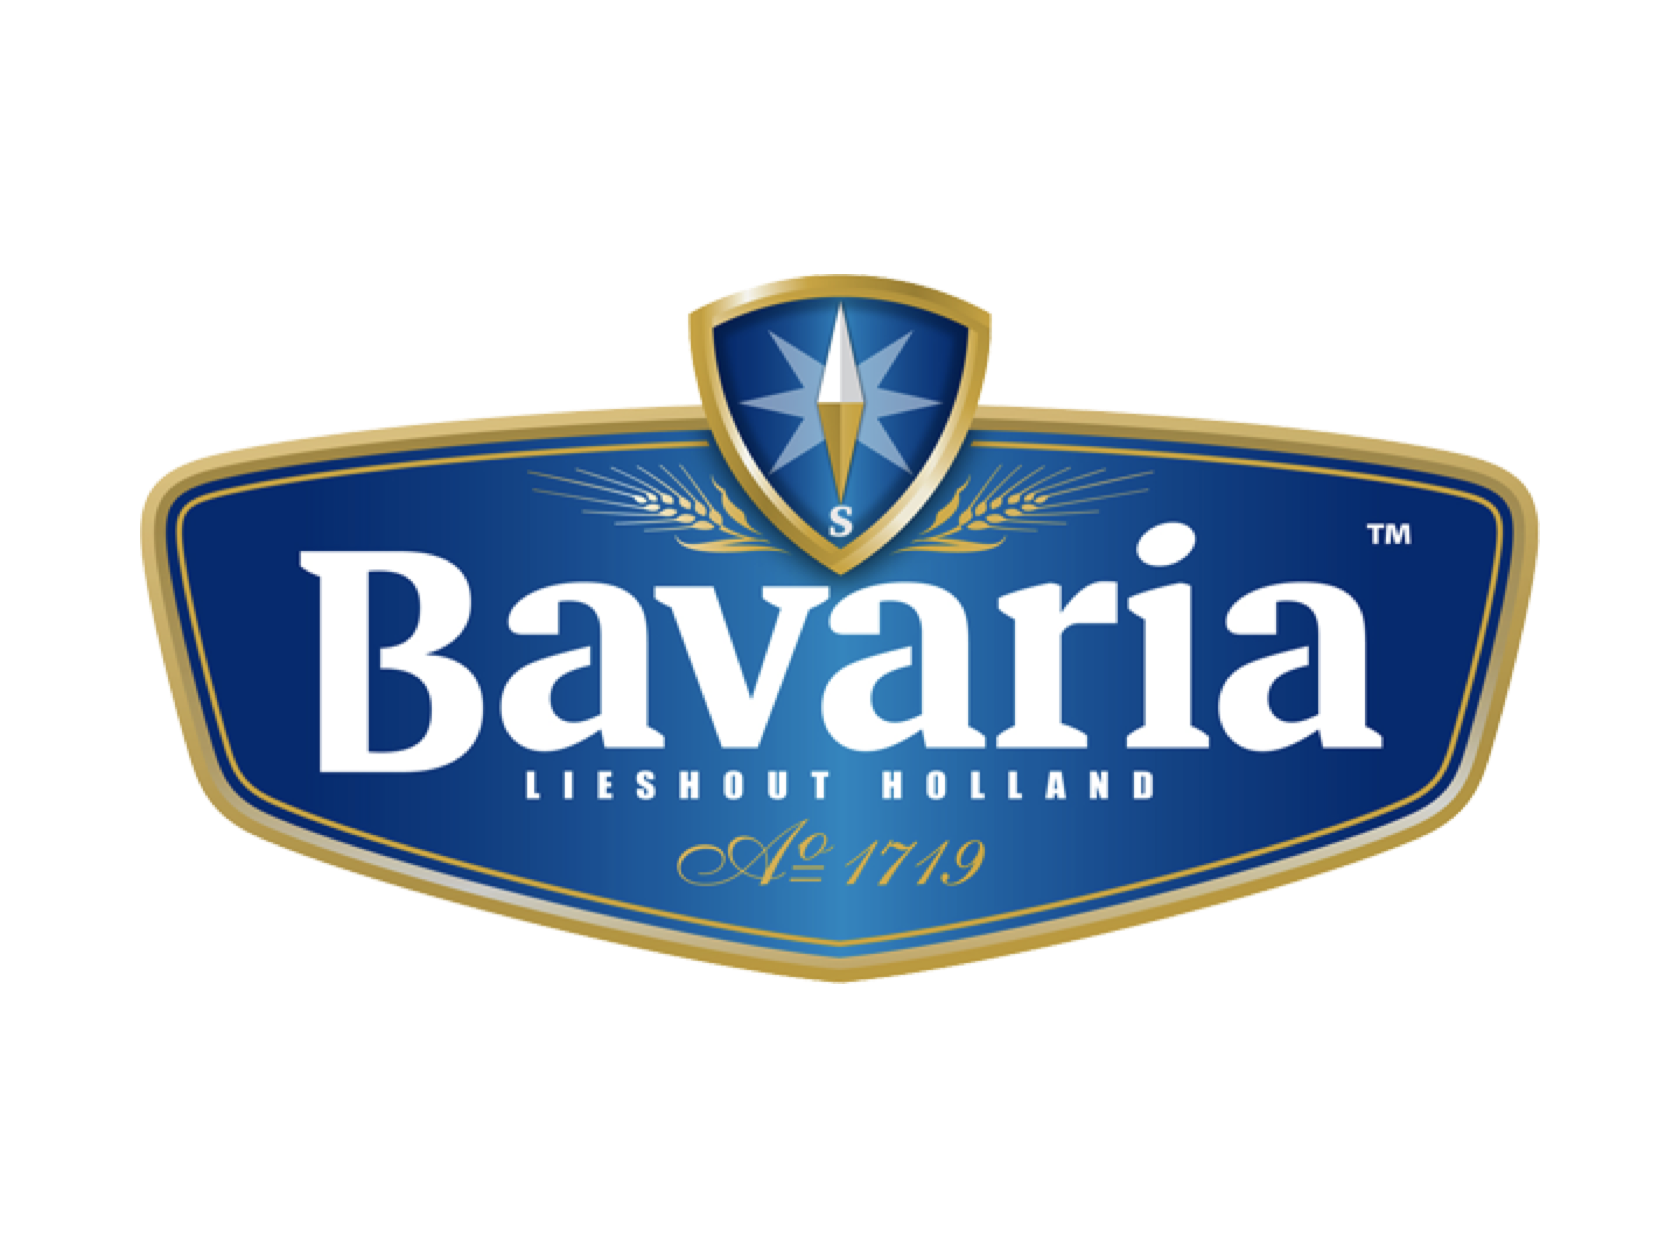 Bavaria Bier TS24 partner